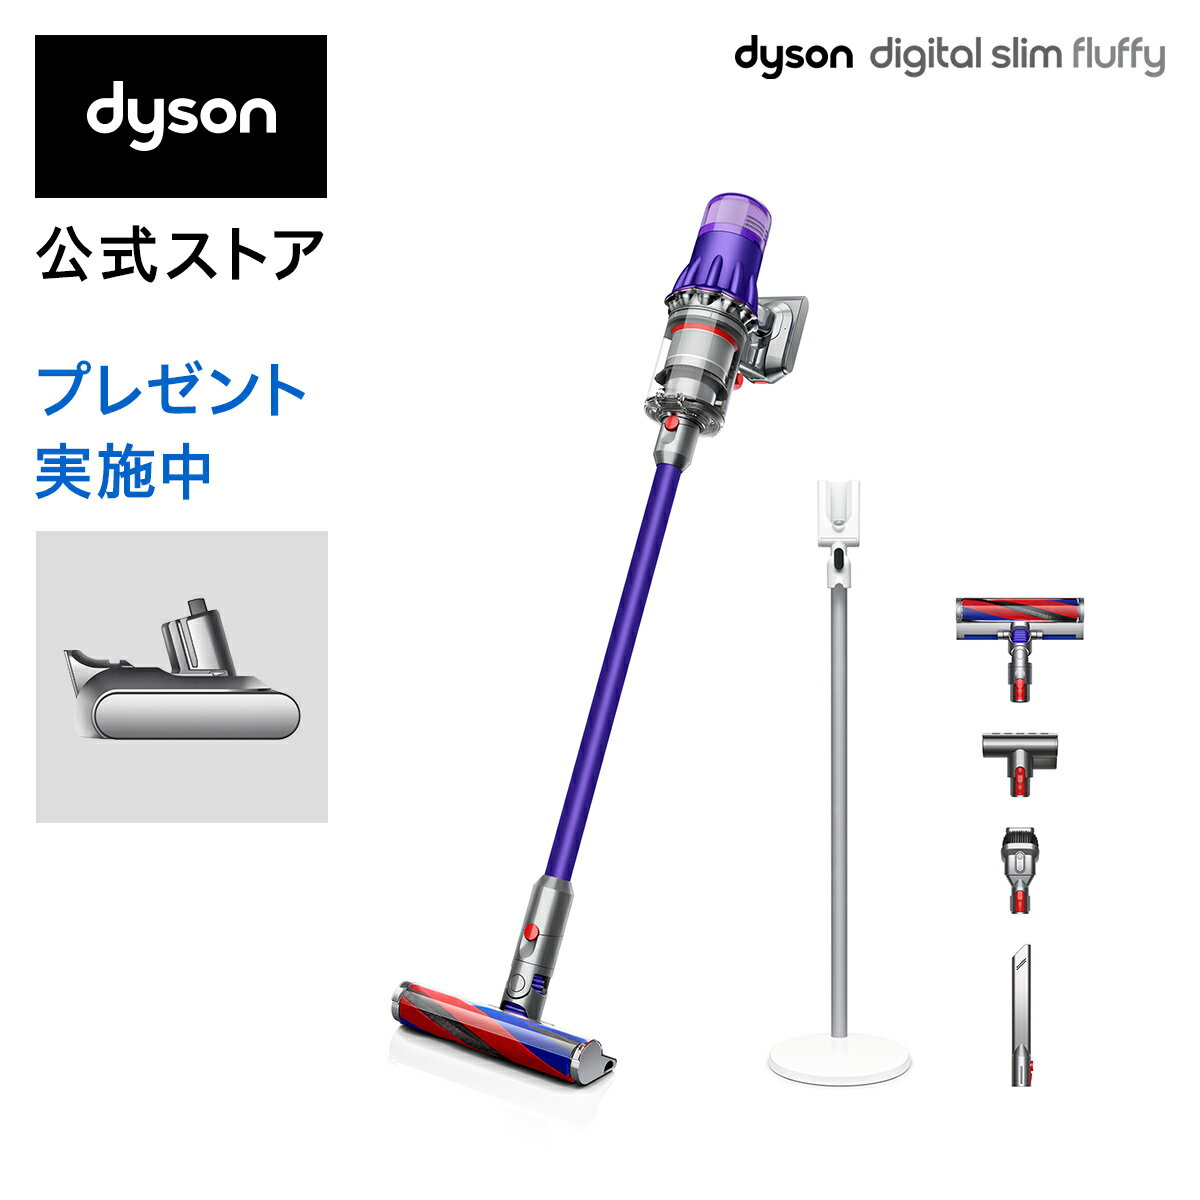 【バッテリープレゼント中】【軽量でパワフル】【数量限定】ダイソン Dyson Digital Slim Fluffy サイクロン式 コードレス掃除機 dyson SV18FF 2020年モデル【プレゼント別送】